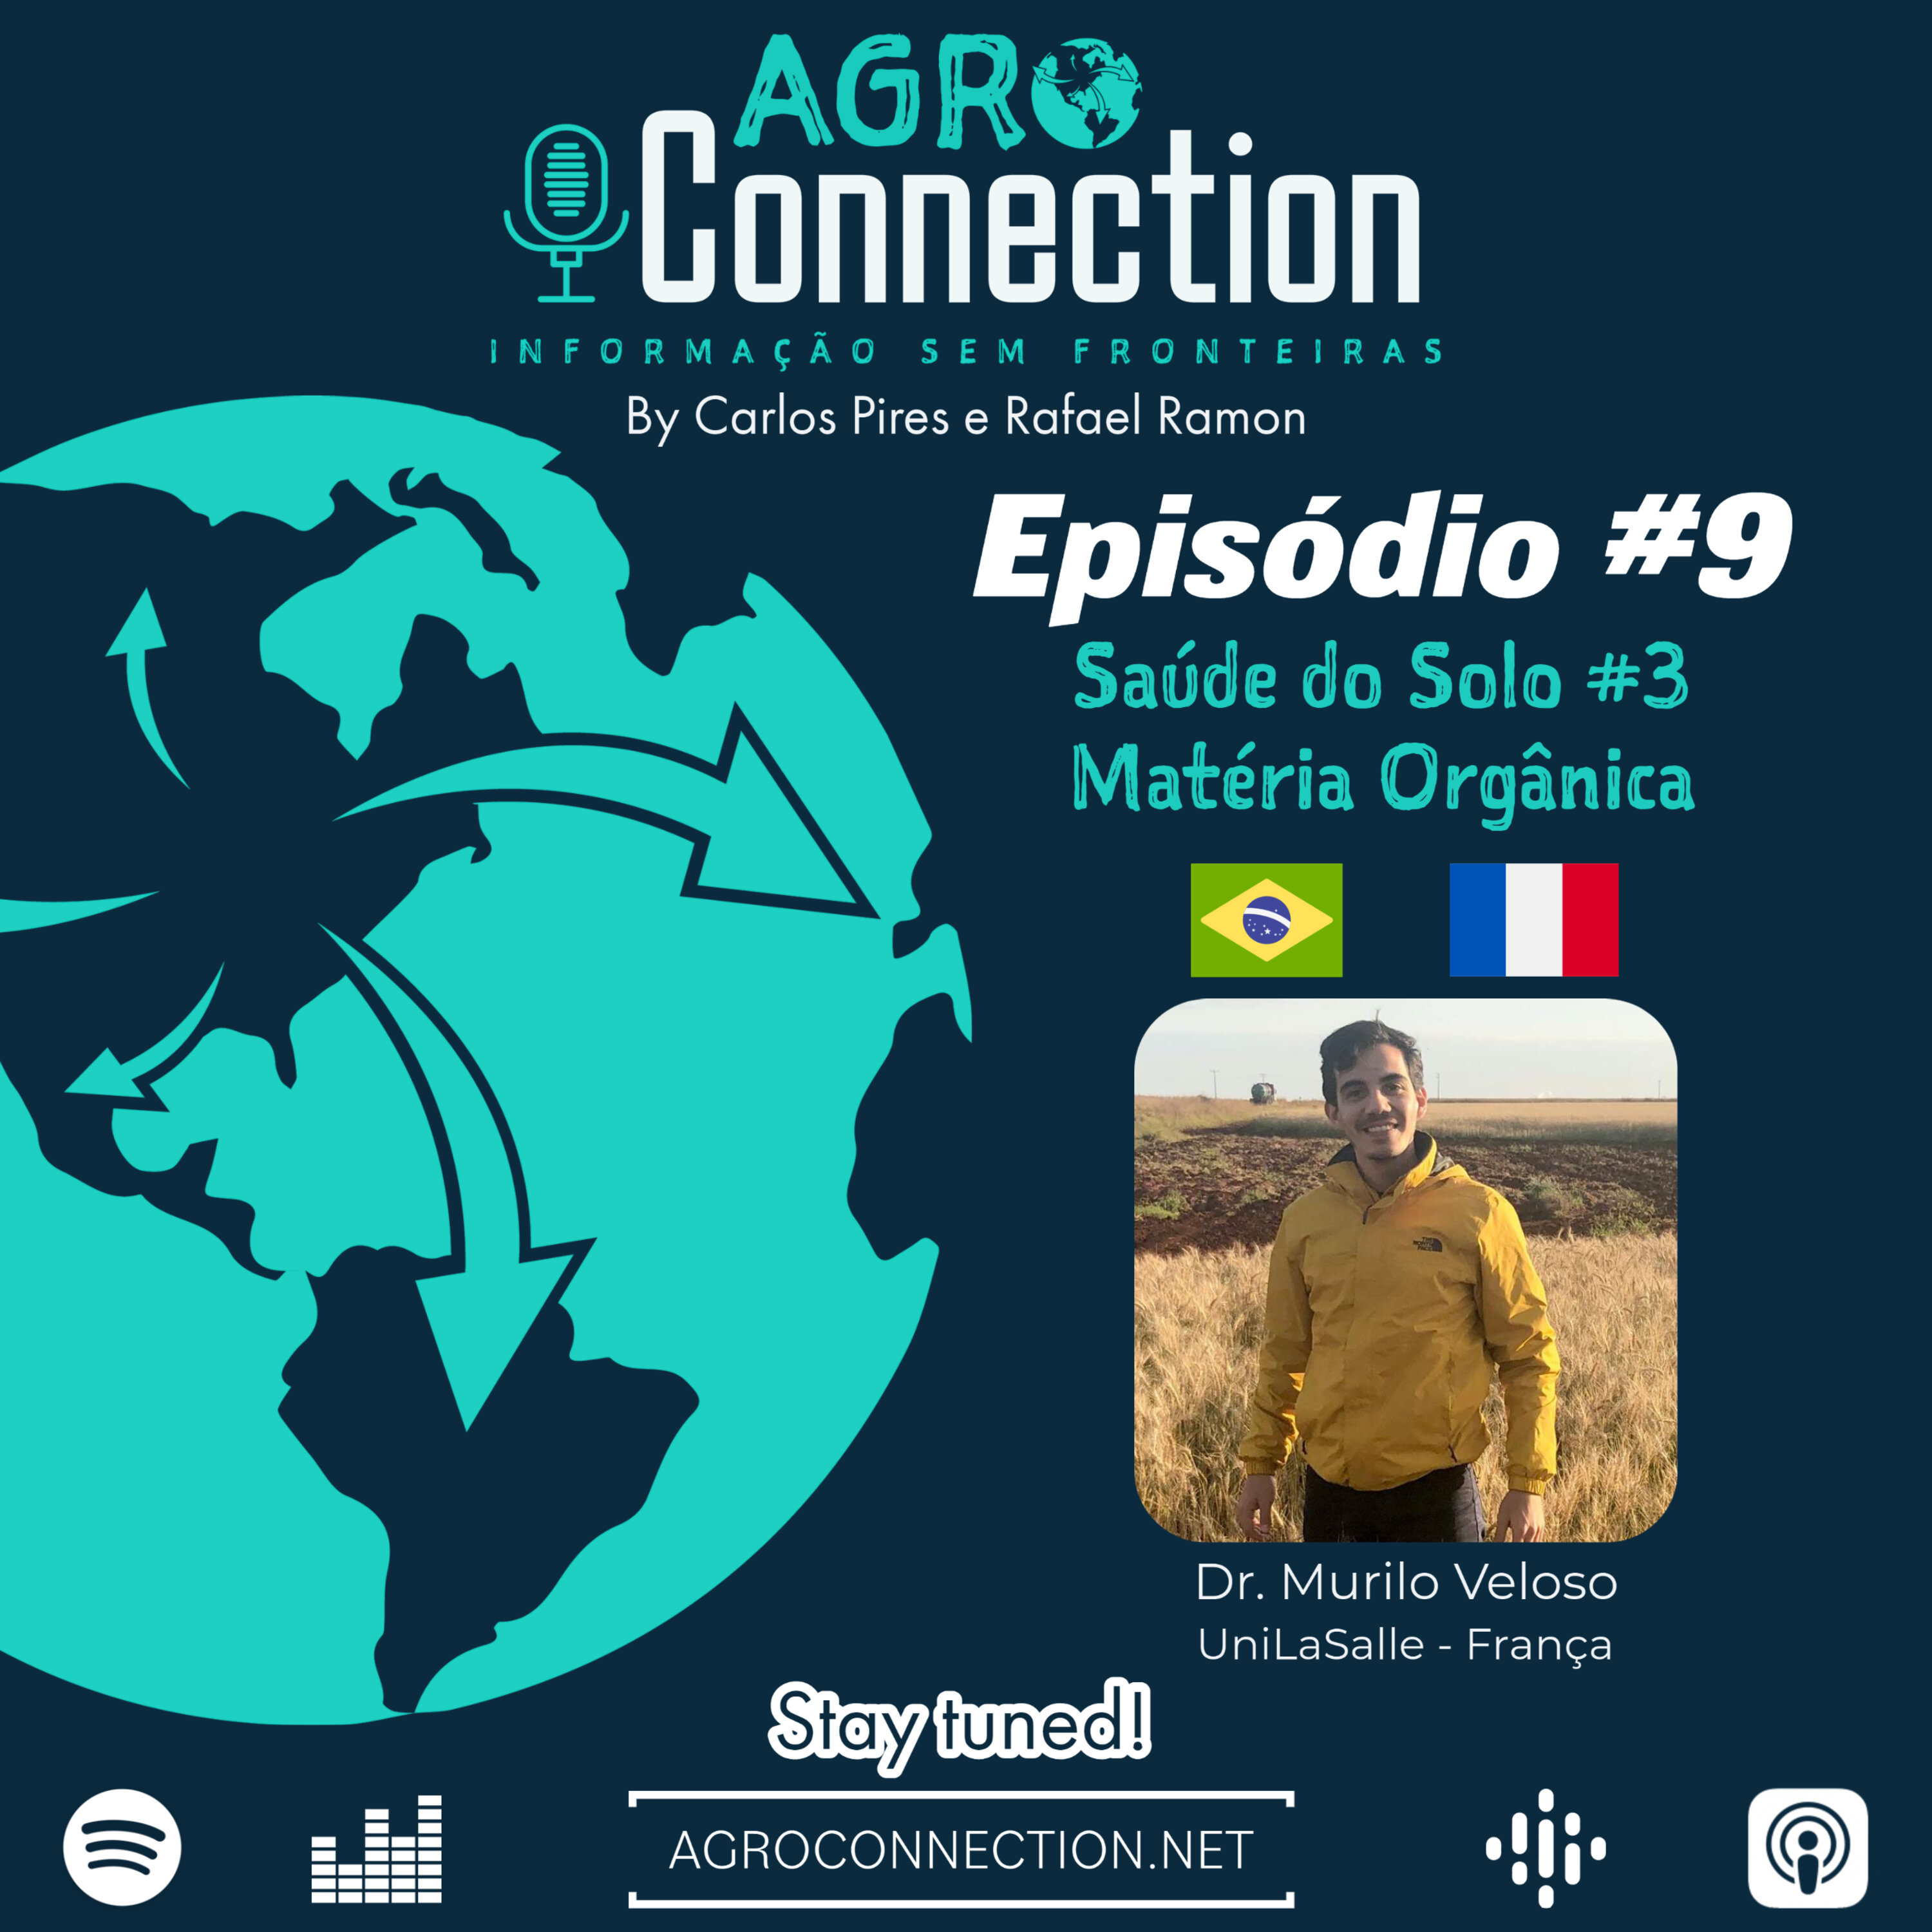 EP #9 - Especial Saúde do Solo #3 - Matéria Orgânica com Dr. Murilo Veloso!